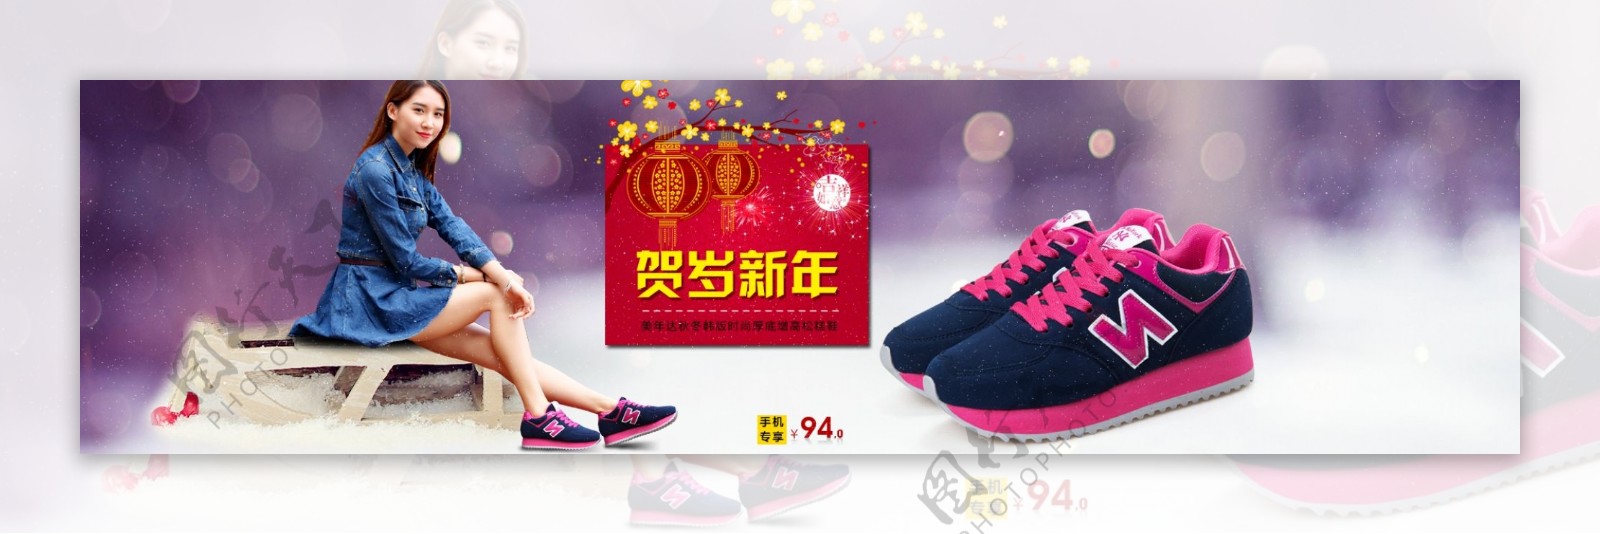 2015淘宝女鞋春节全屏促销海报